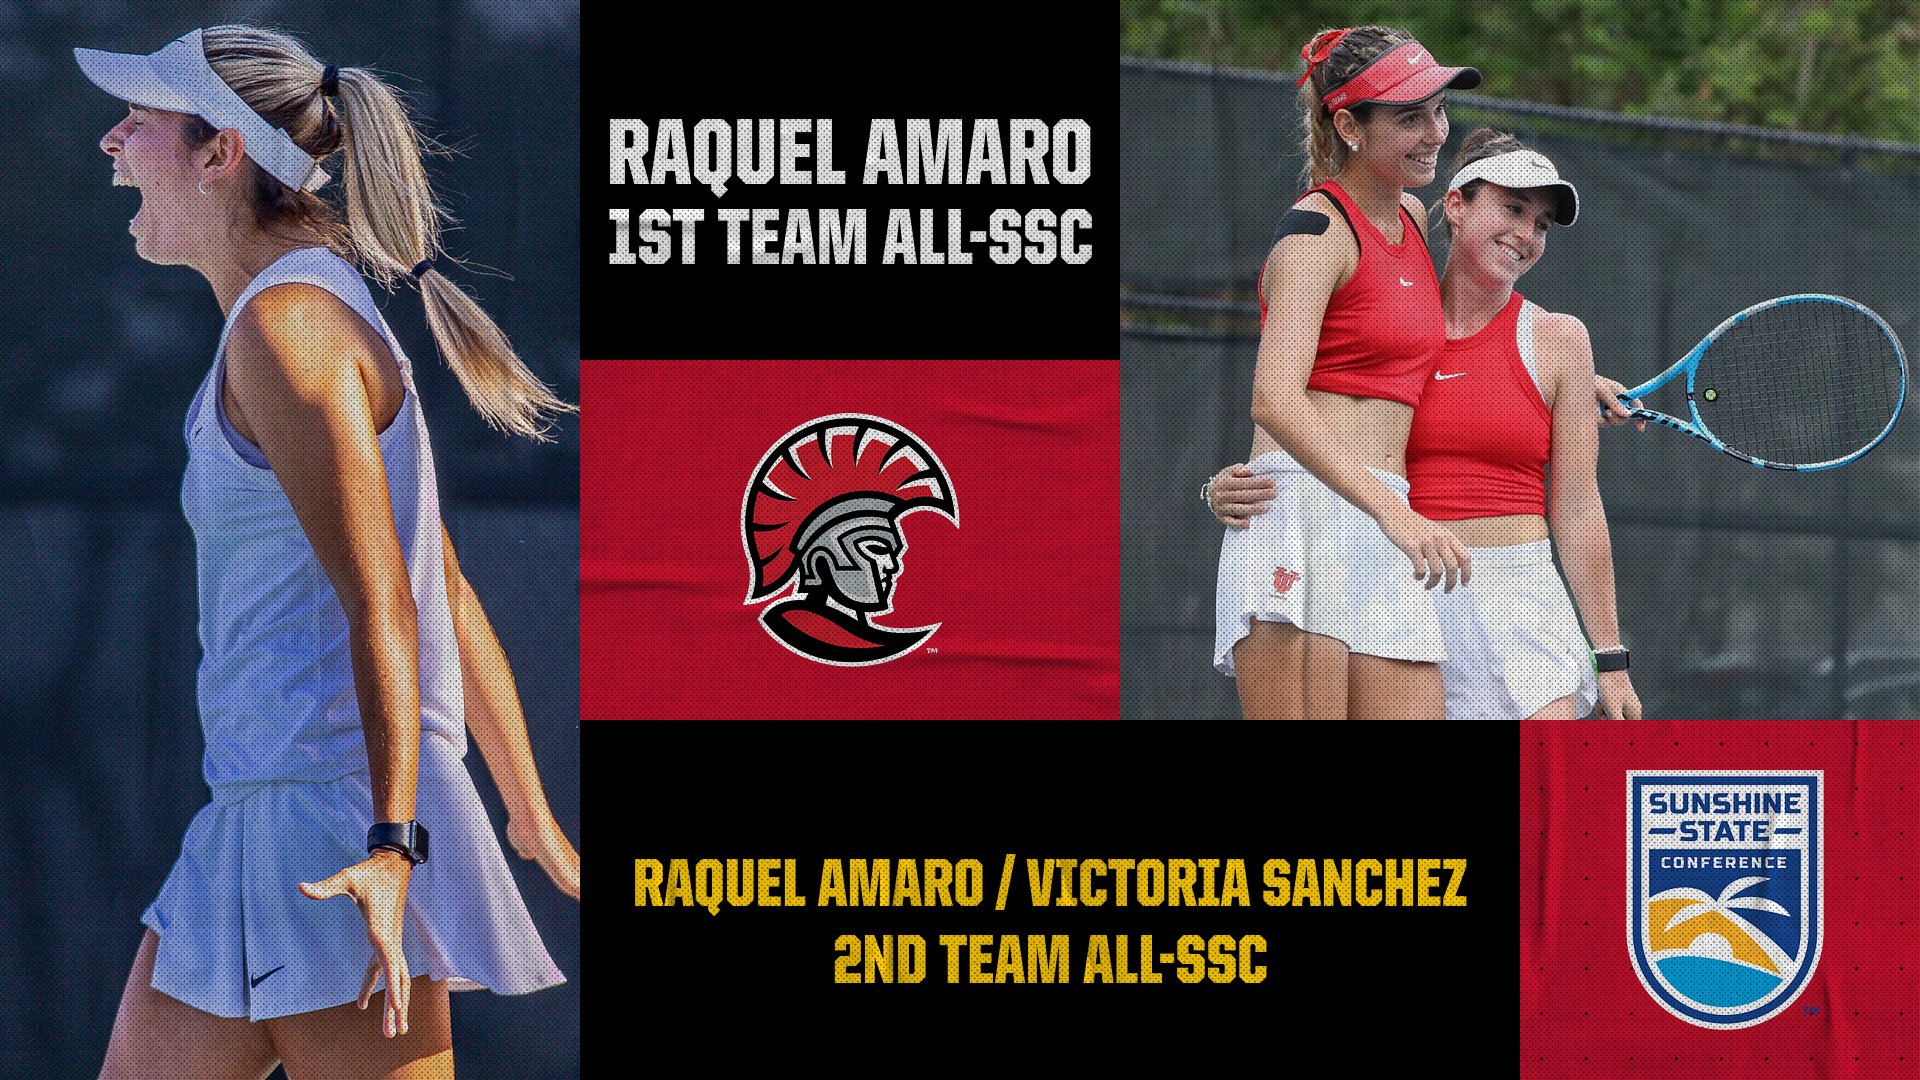 Raquel Amaro, Victoria Sanchez Named to All-SSC Team